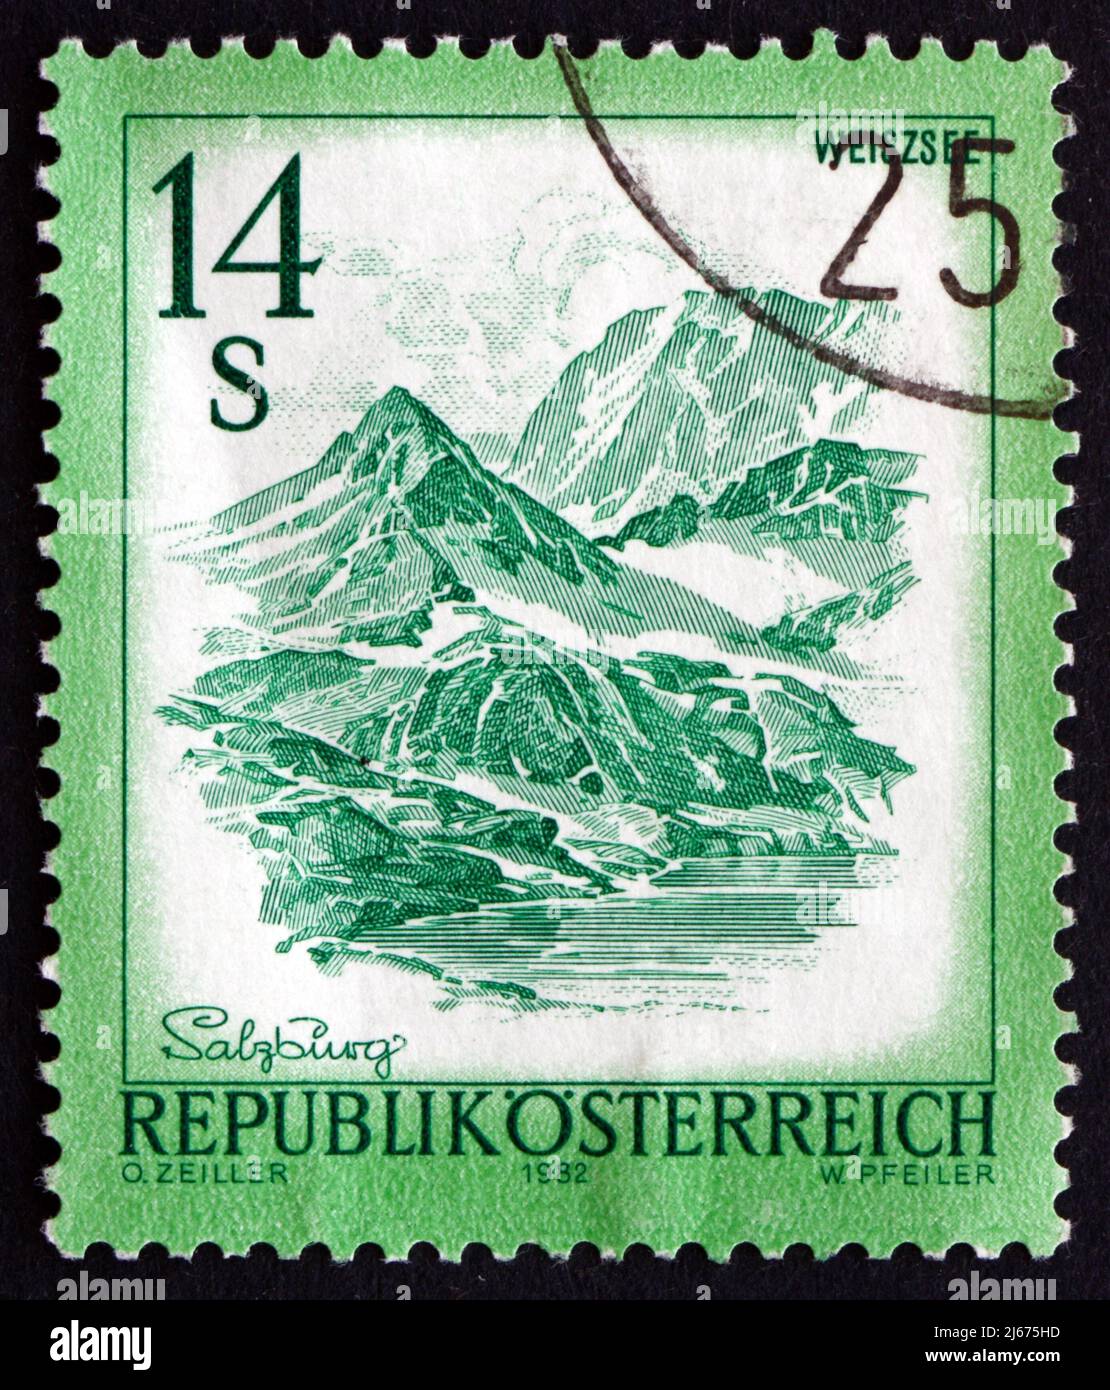 AUTRICHE - VERS 1982 : un timbre imprimé en Autriche montre Weisssee, Salzbourg, vers 1982 Banque D'Images